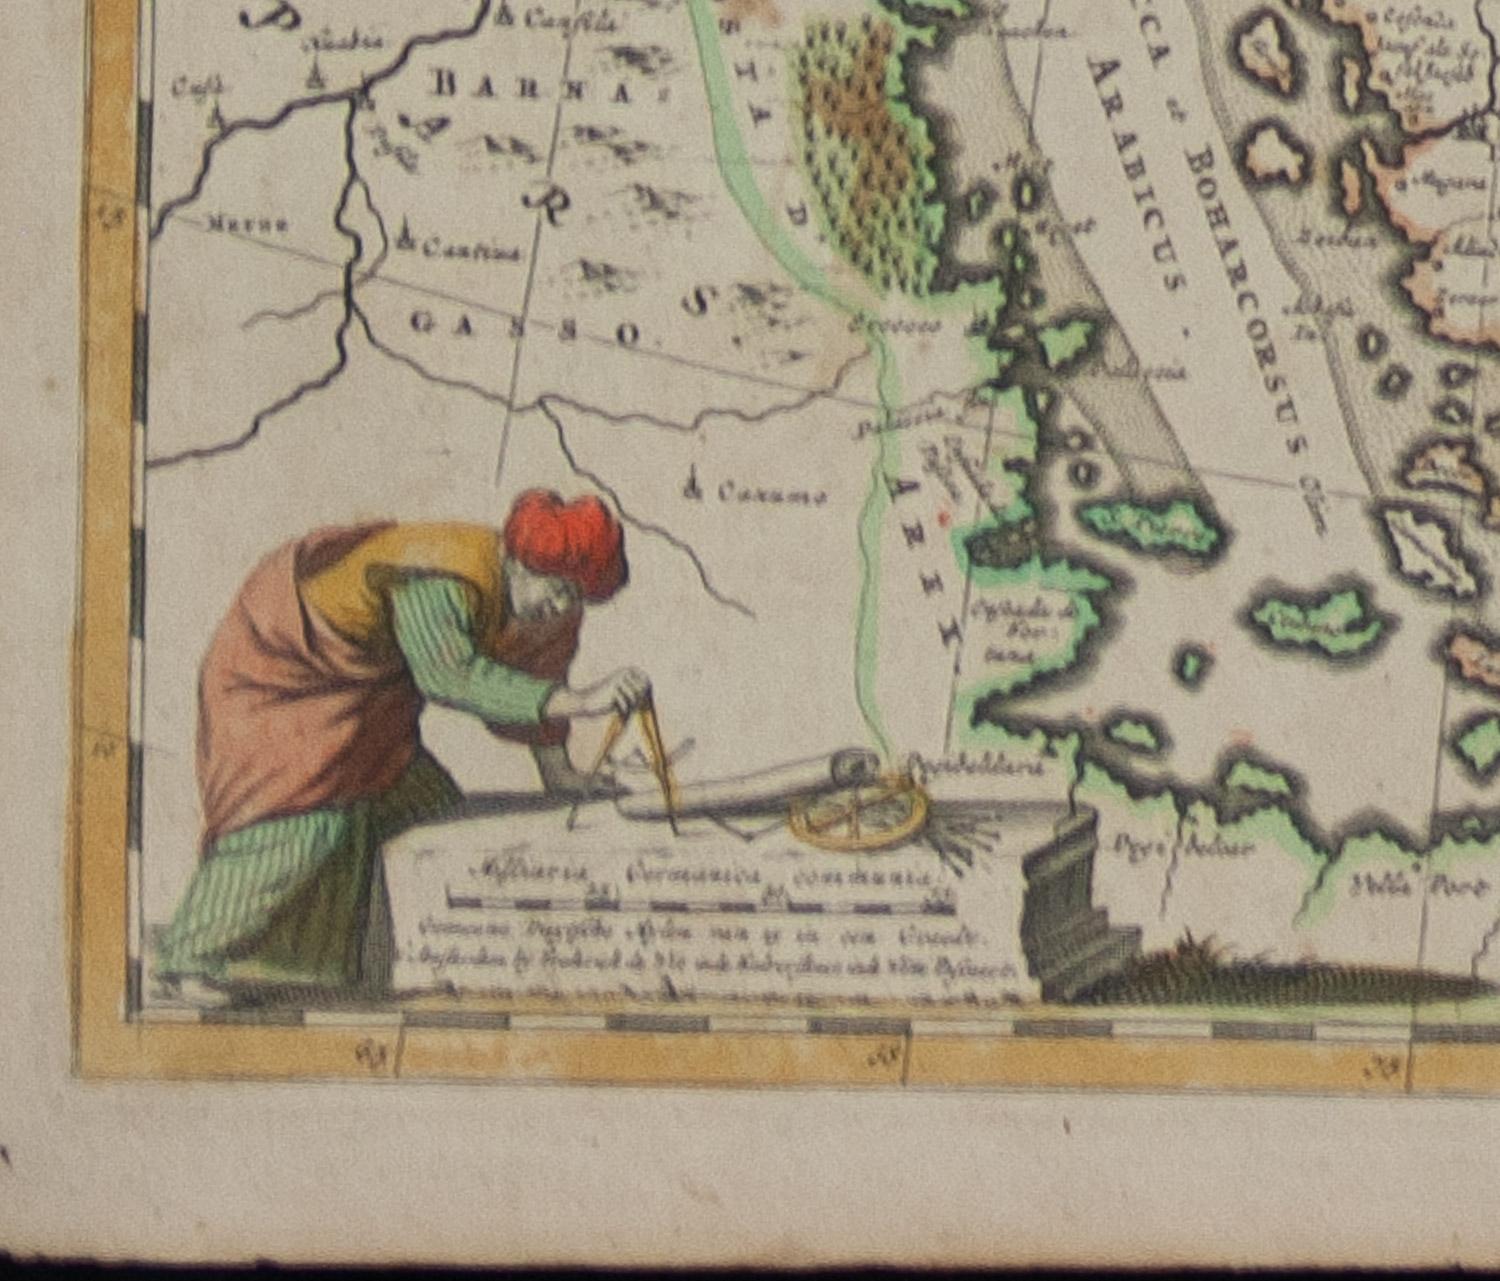  Persien, Armenien, Natoliae et Arabiae Descriptio per Frederick deWit 1666 Karte (Realismus), Print, von Frederick DeWit